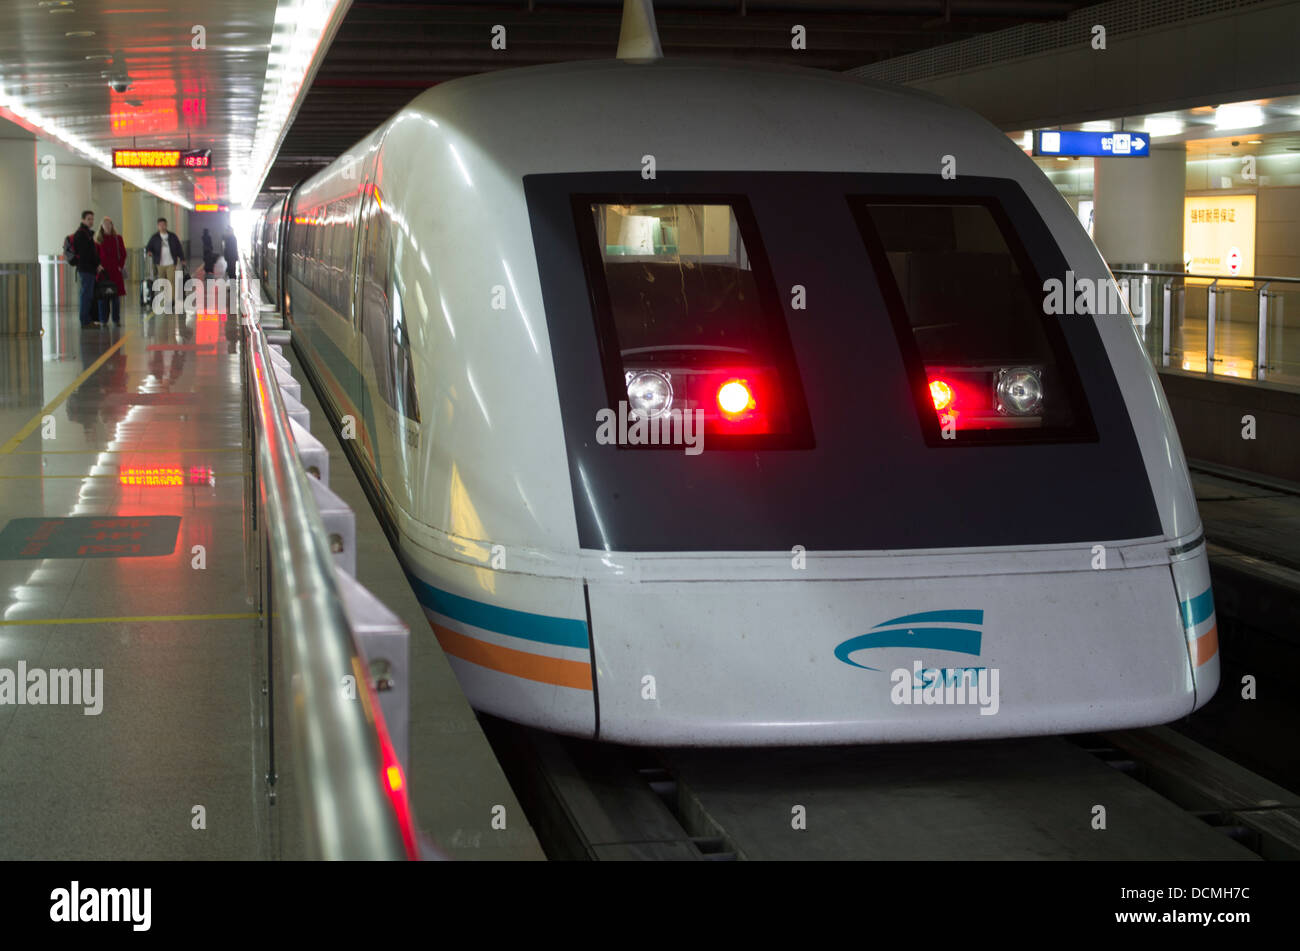 Shanghai Maglev Train ou Shanghai Transrapid, train à sustentation magnétique à partir de l'Aéroport International de Shanghai Pudong Banque D'Images